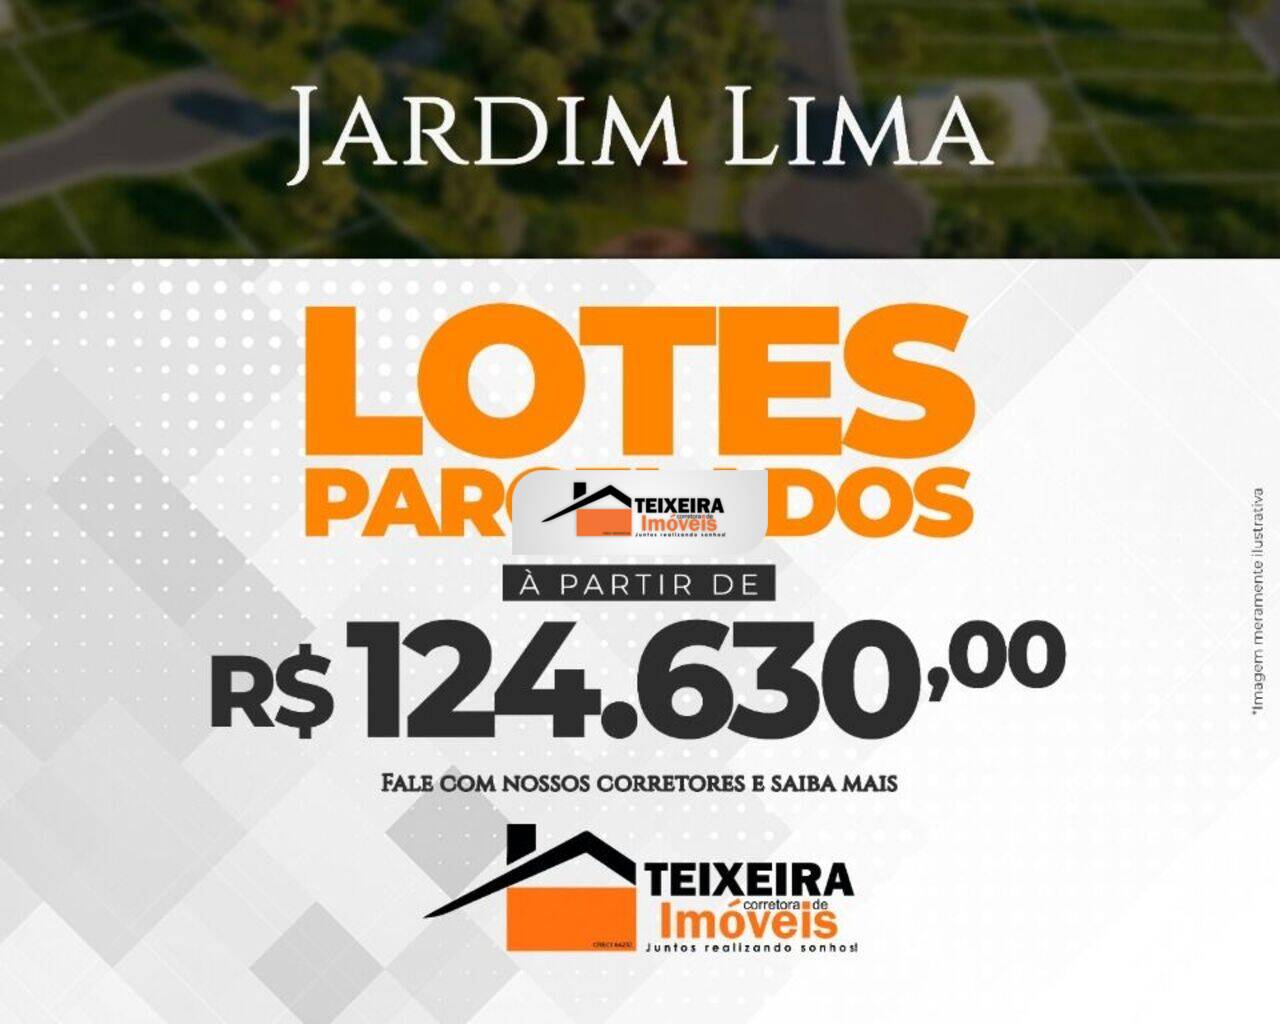 Terreno Jardim Lima, Andradas - MG